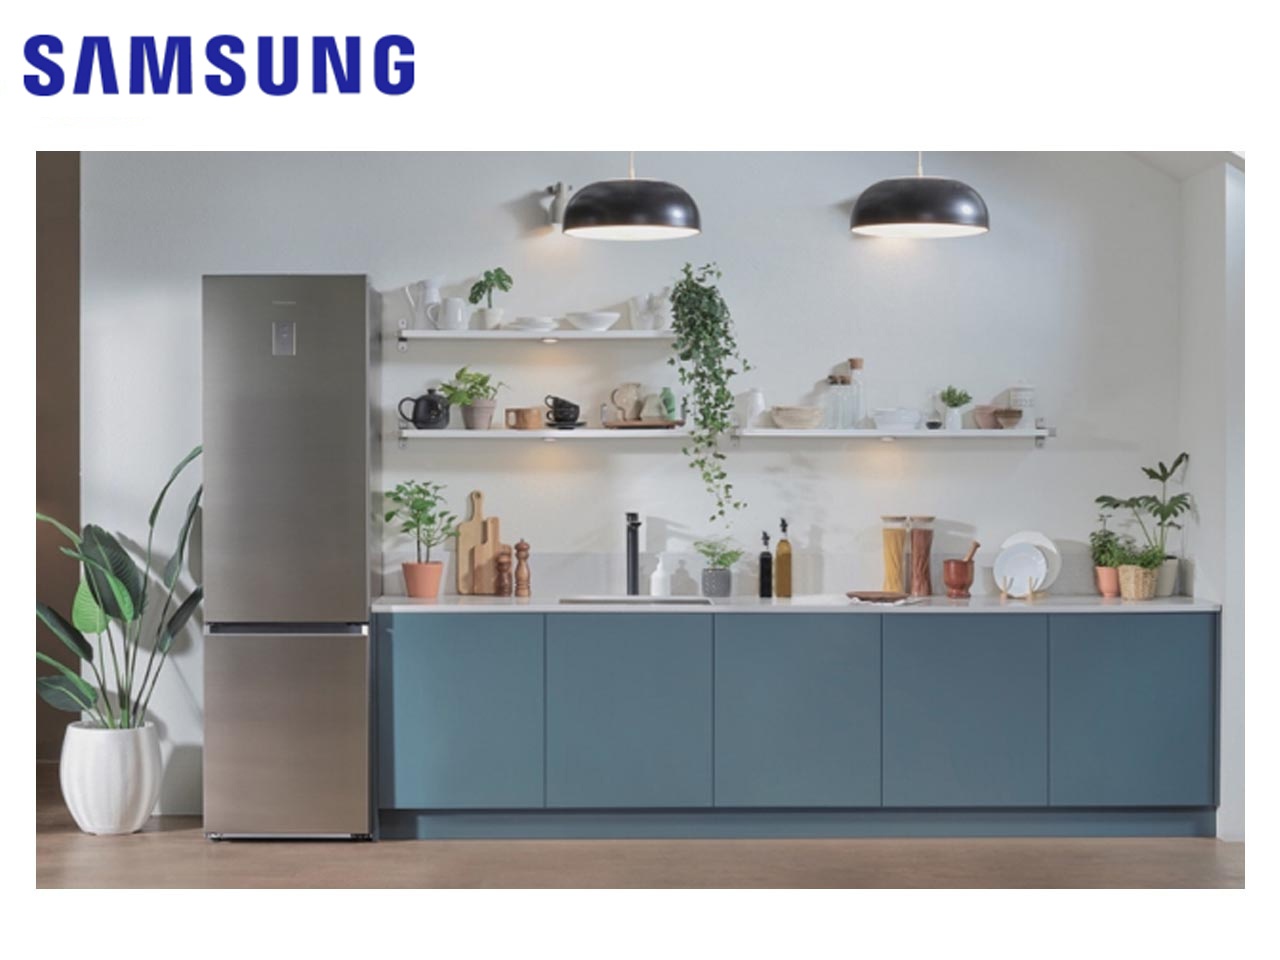 Samsung présente deux nouvelles gammes de lave-linge et de réfrigérateurs combinés